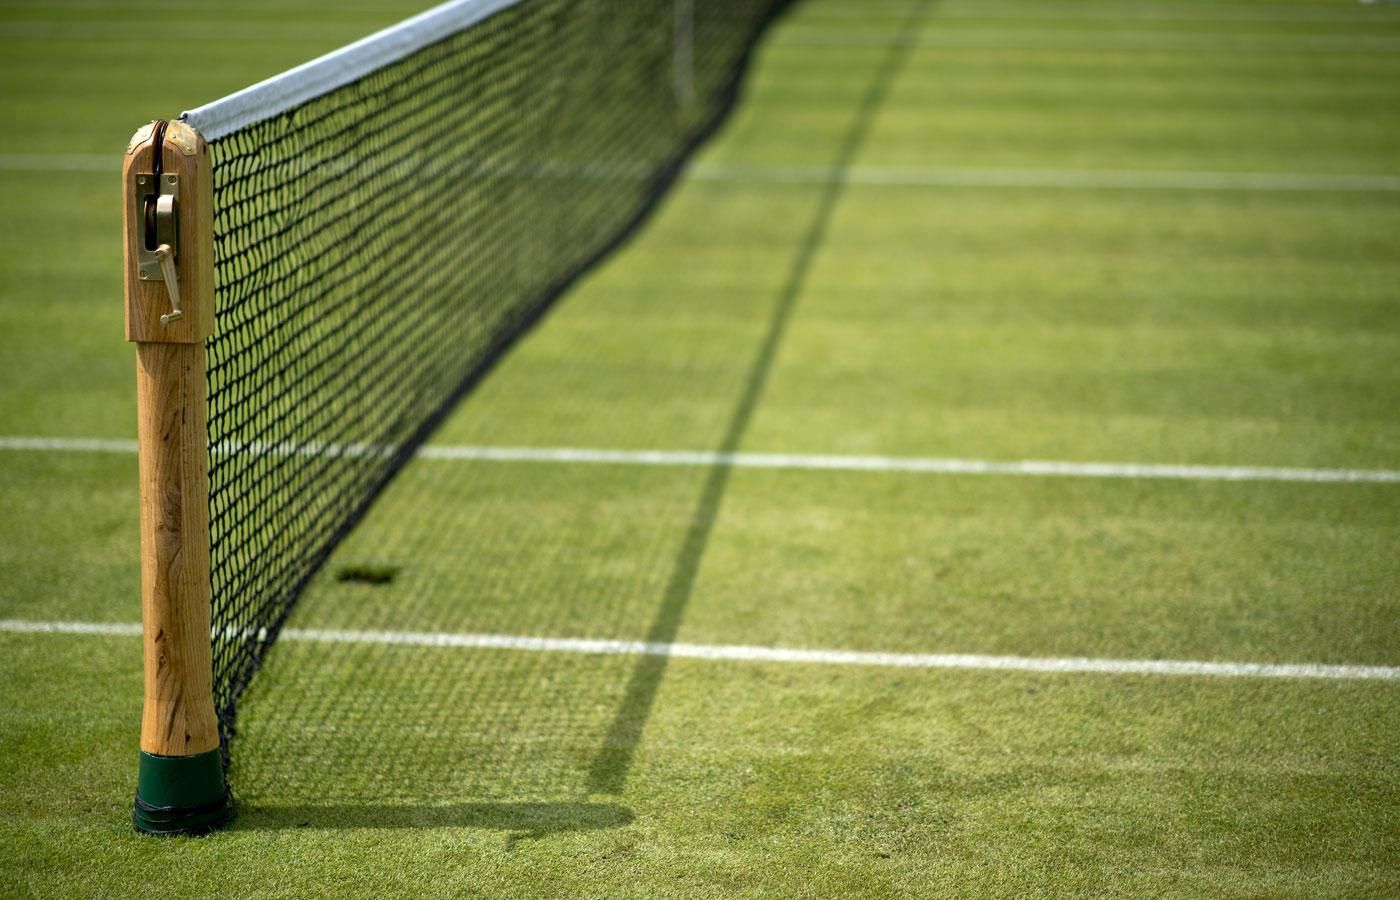 Костюк и Ястремская удачно стартовали в квалификации Wimbledon, Калинина проиграла свой матч